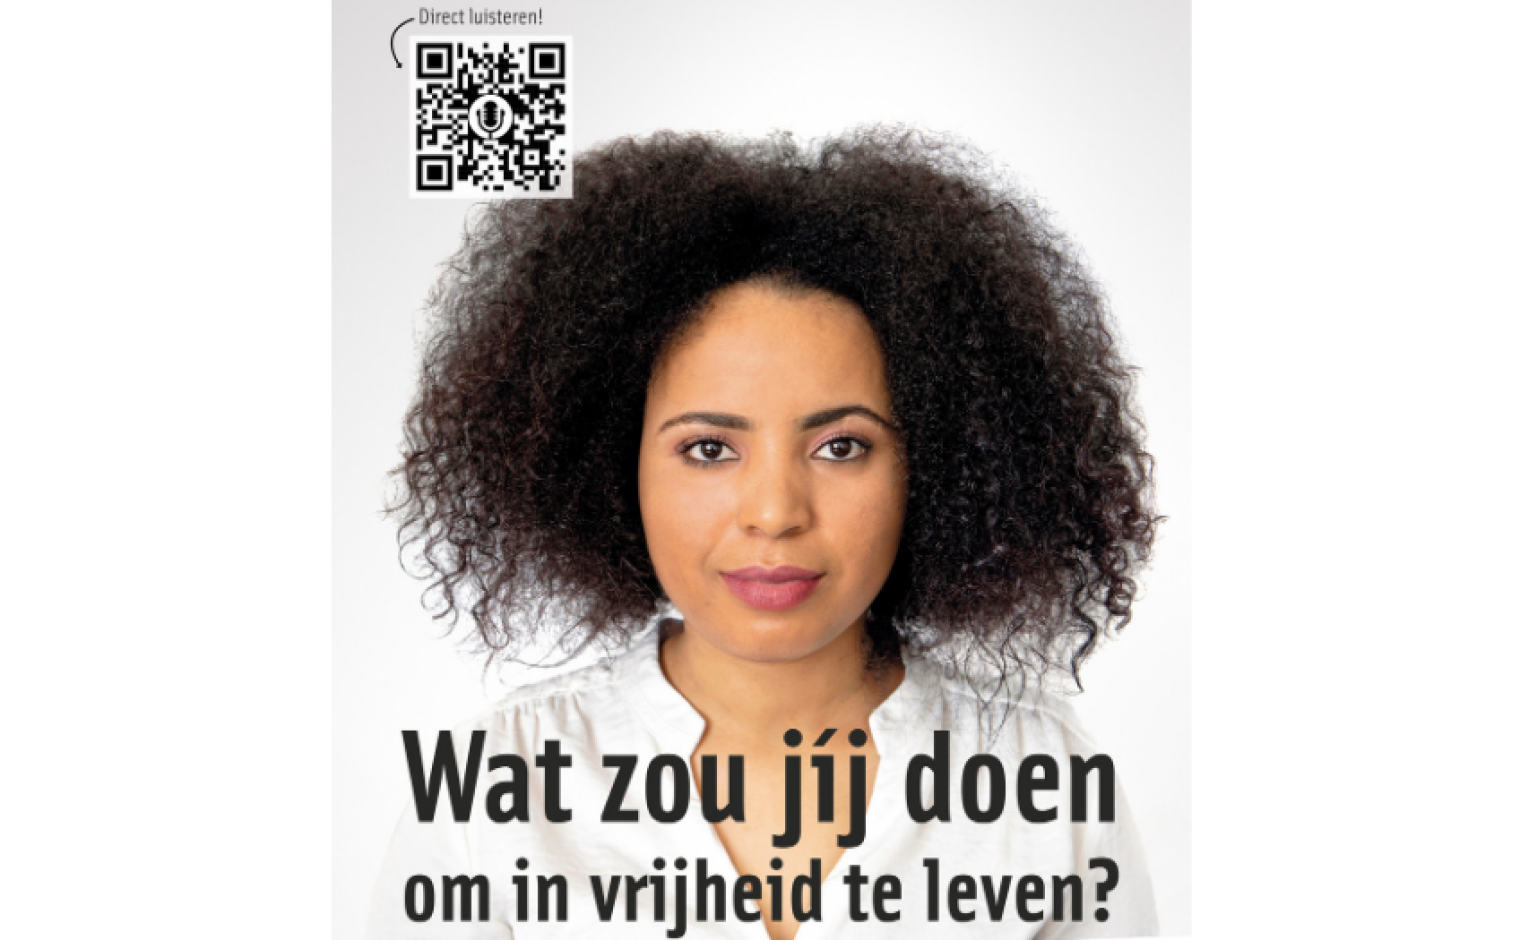 Campagnebeeld van Vluchtelingenwerk Nederland.